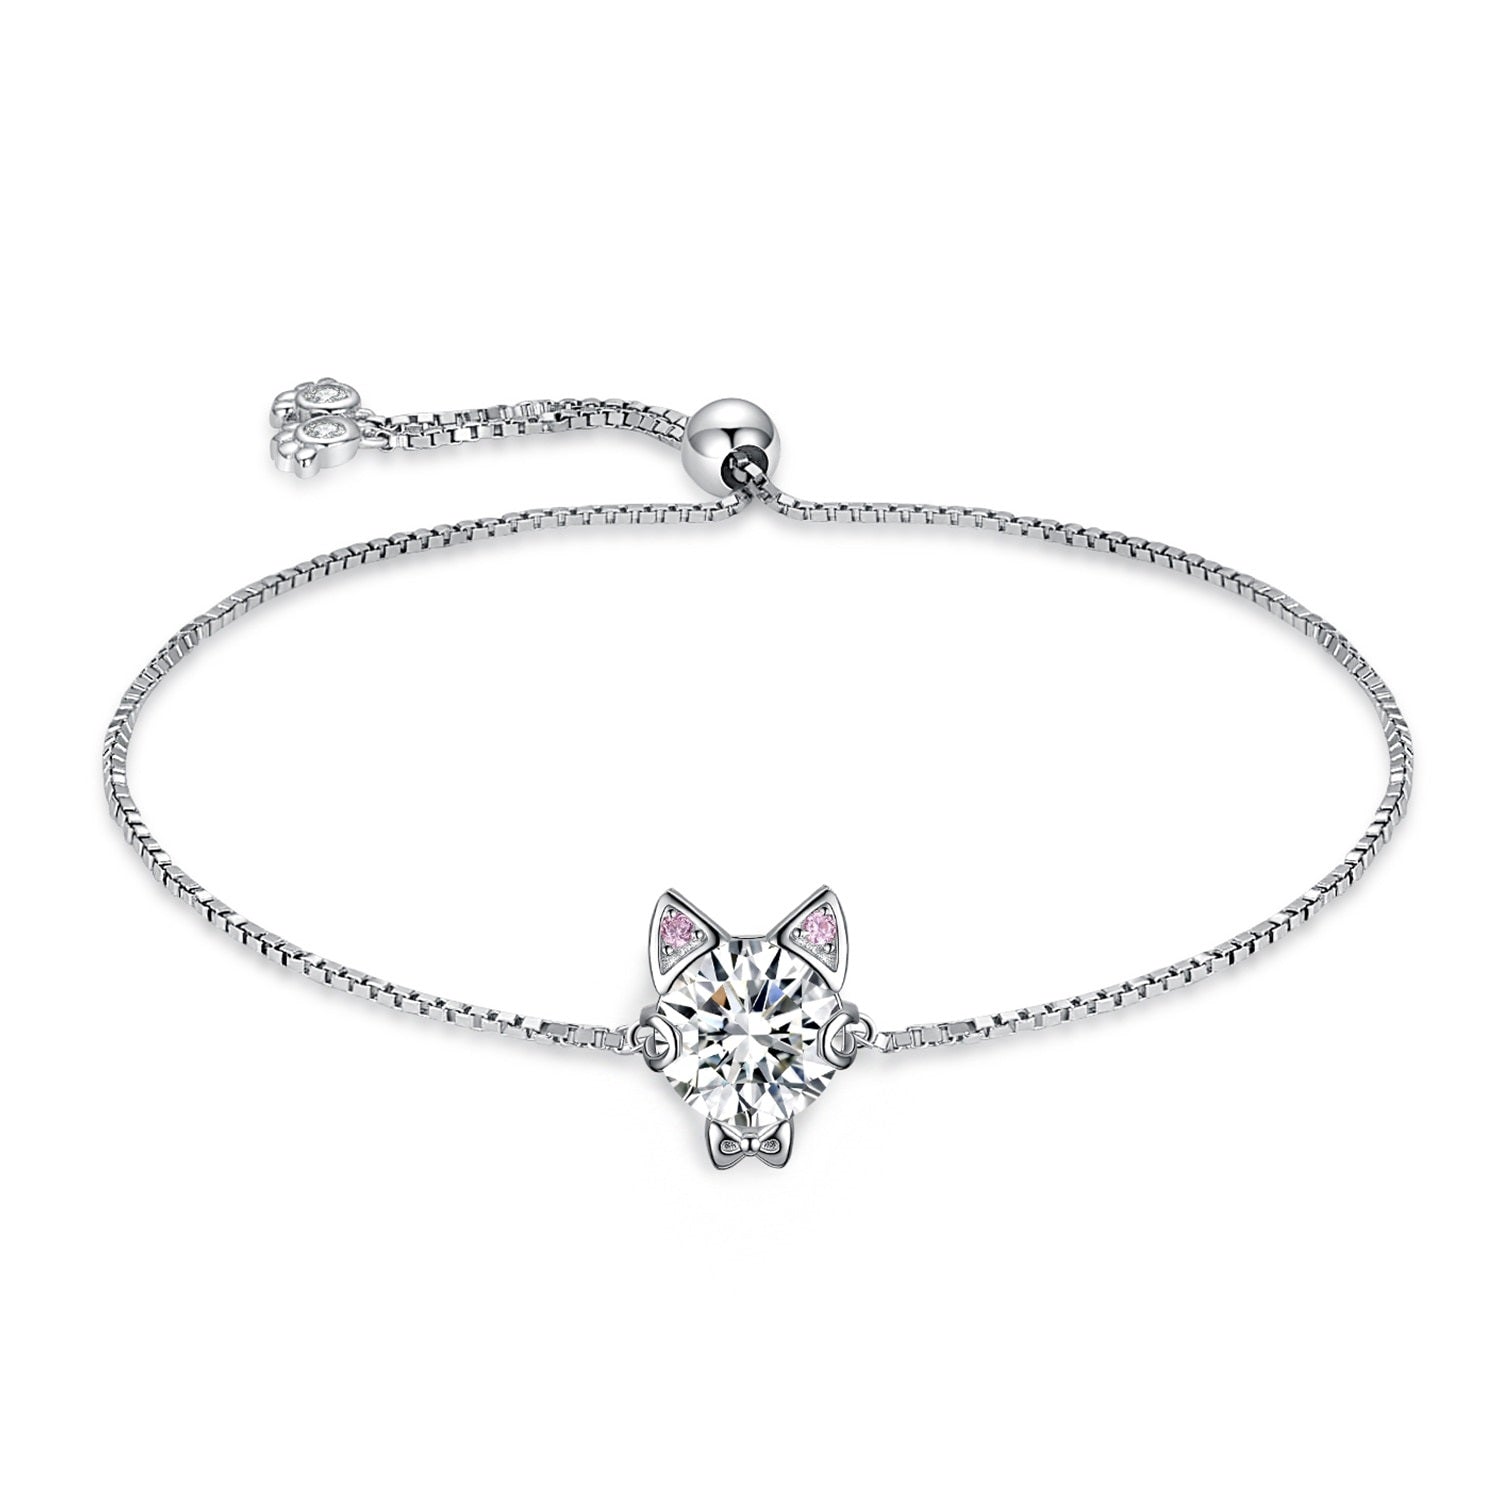 Kitty Cat Bracelet - Cat bracelet